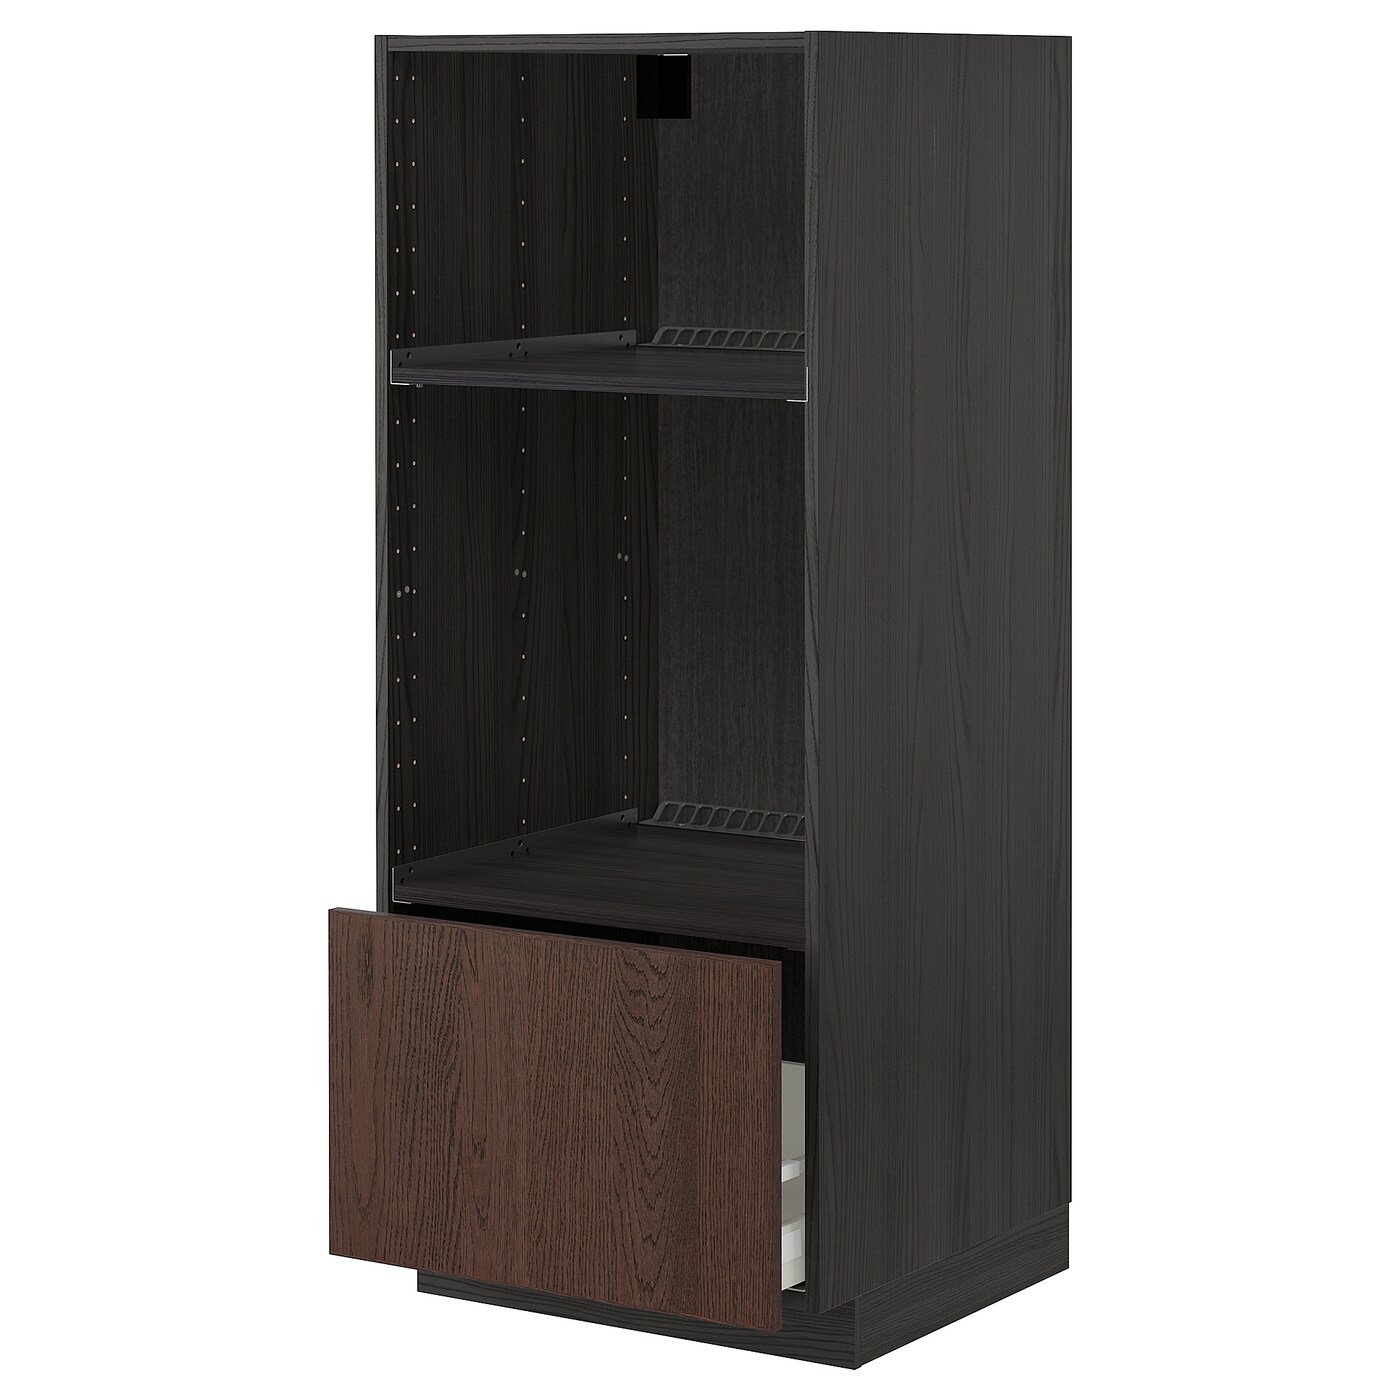 Напольный шкаф  - IKEA METOD MAXIMERA, 148x61,6x60см, черный/коричневый, МЕТОД МАКСИМЕРА ИКЕА